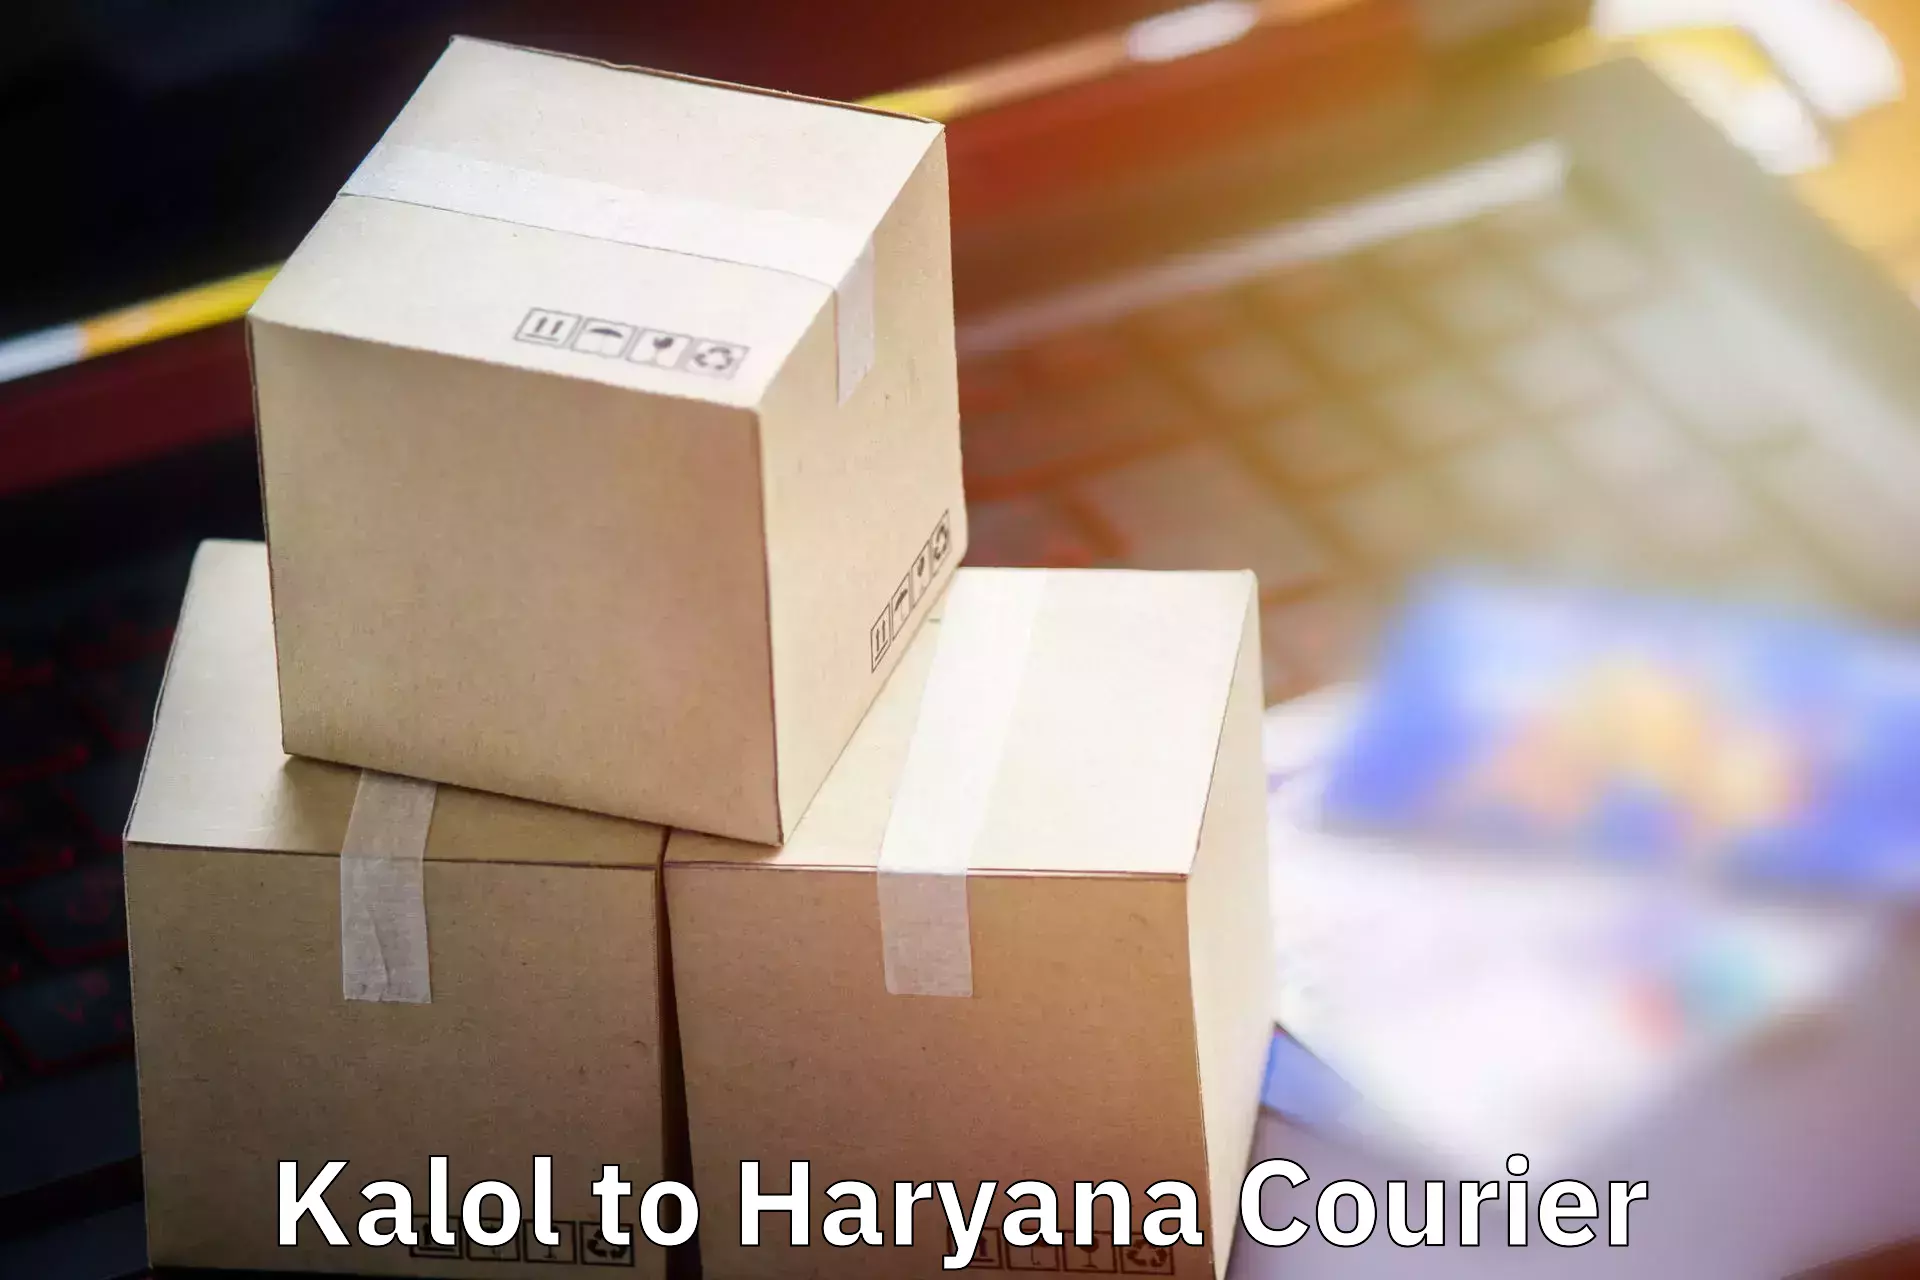 Baggage shipping service Kalol to Bilaspur Haryana